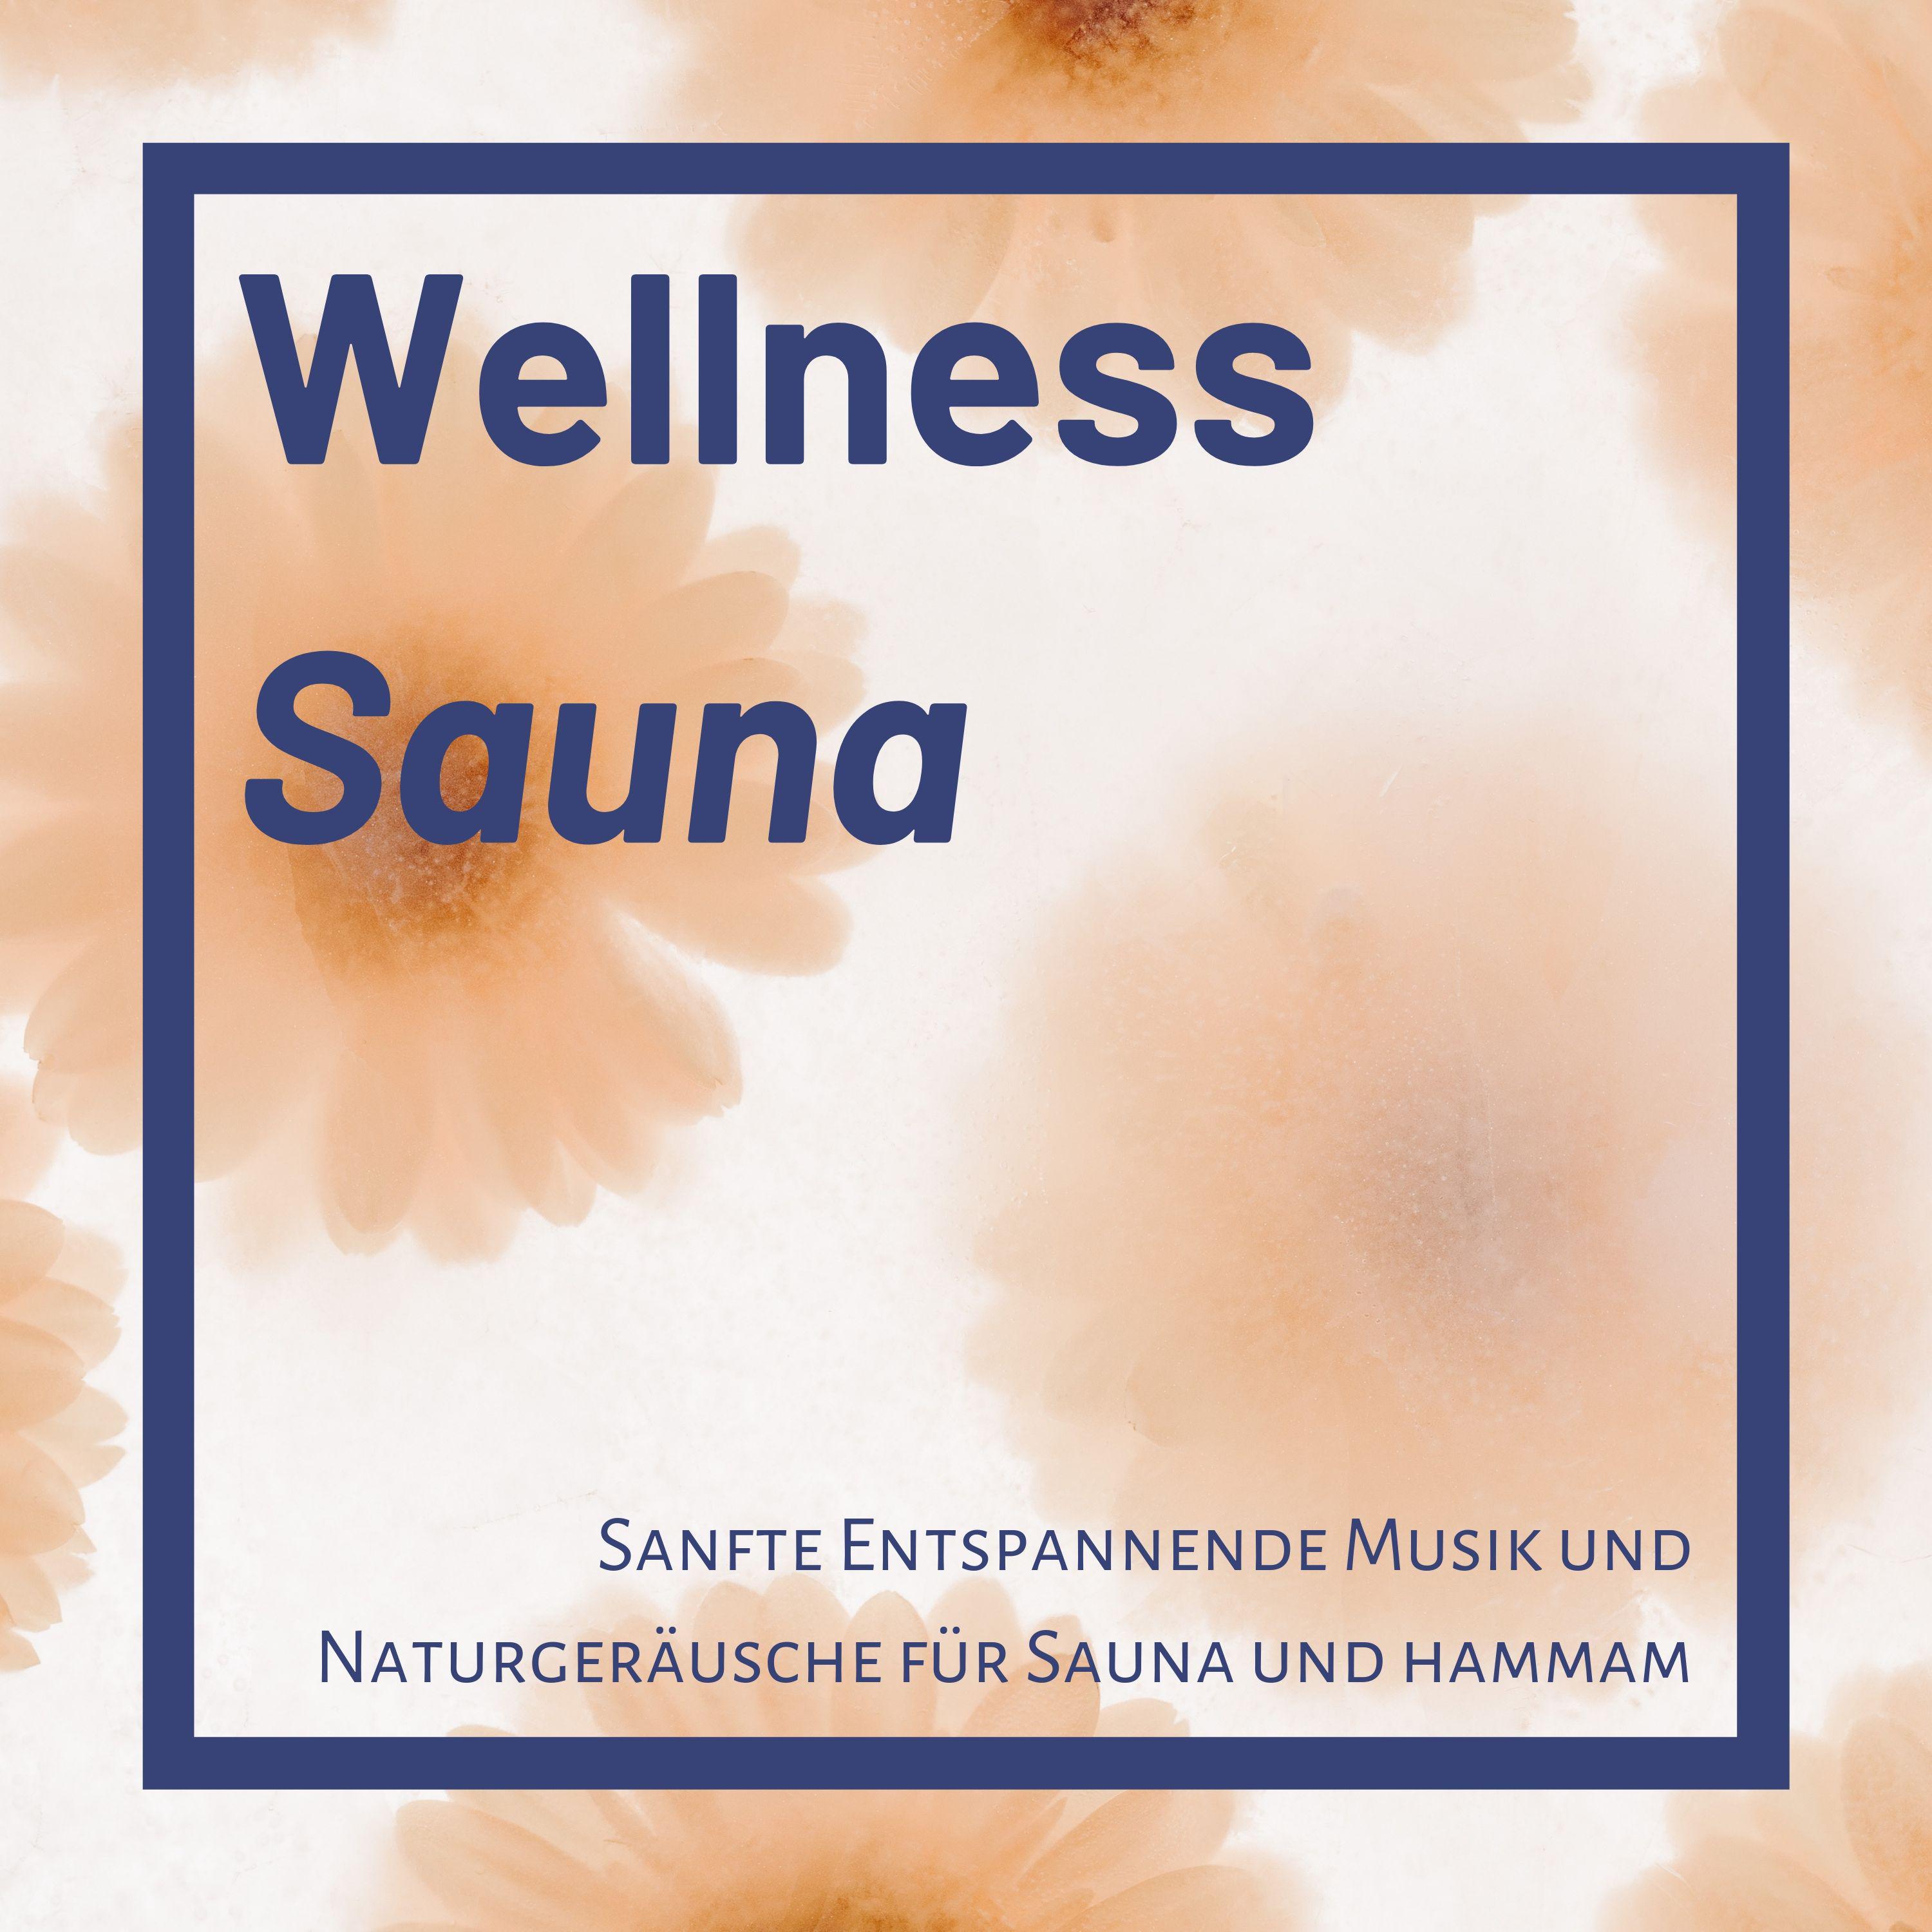 Wellness Sauna